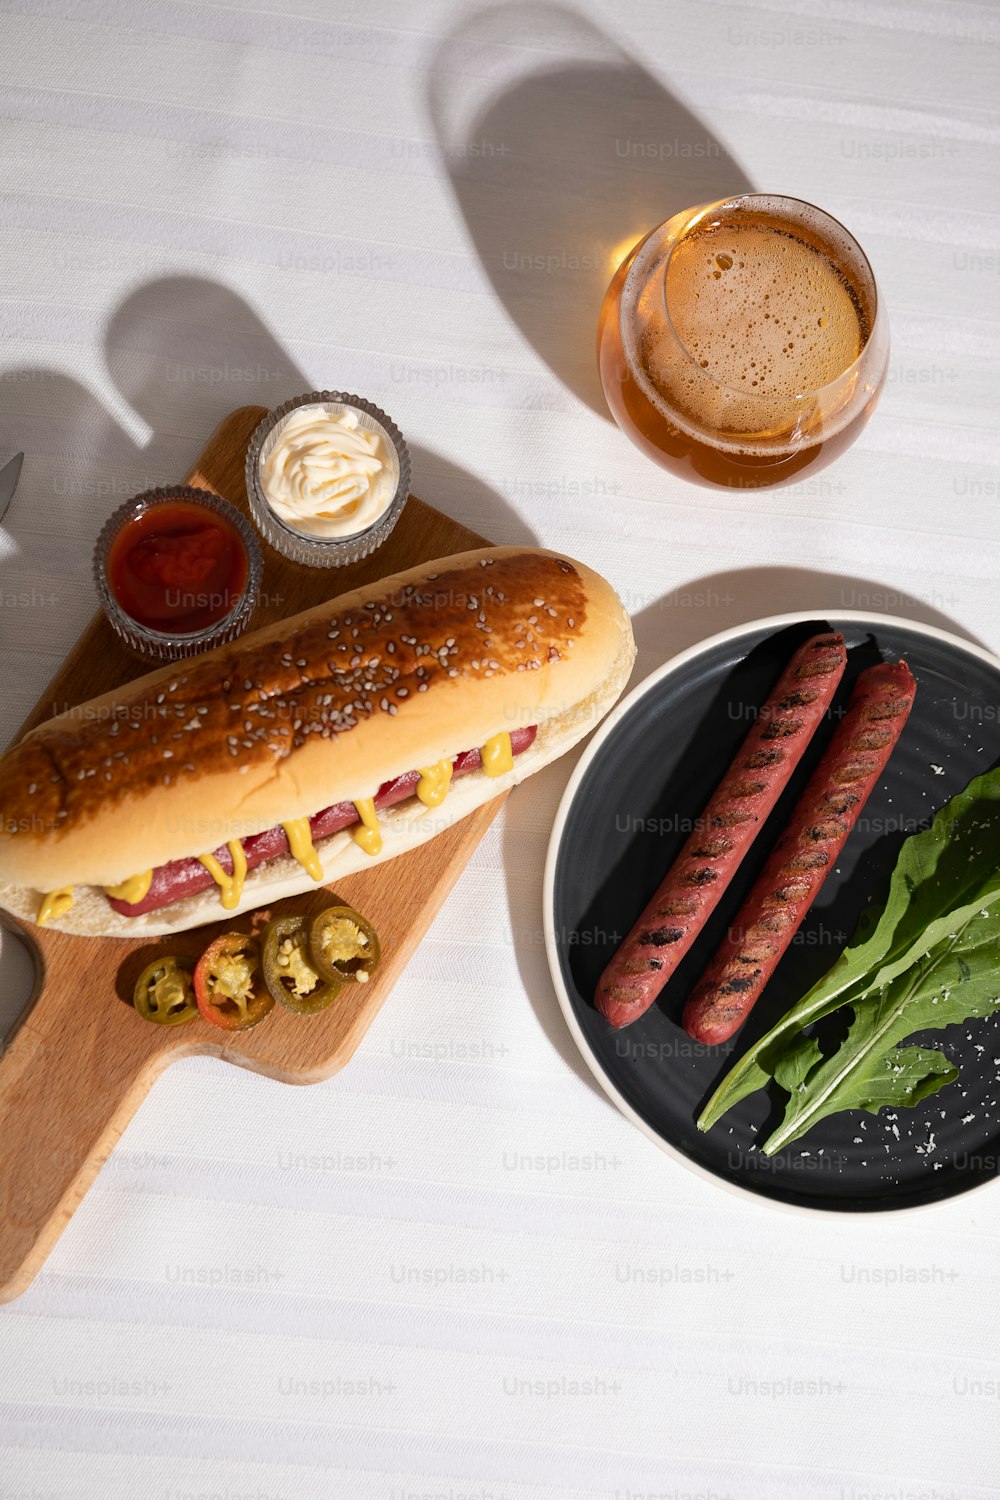 a hot dog on a bun next to a plate of hot dogs